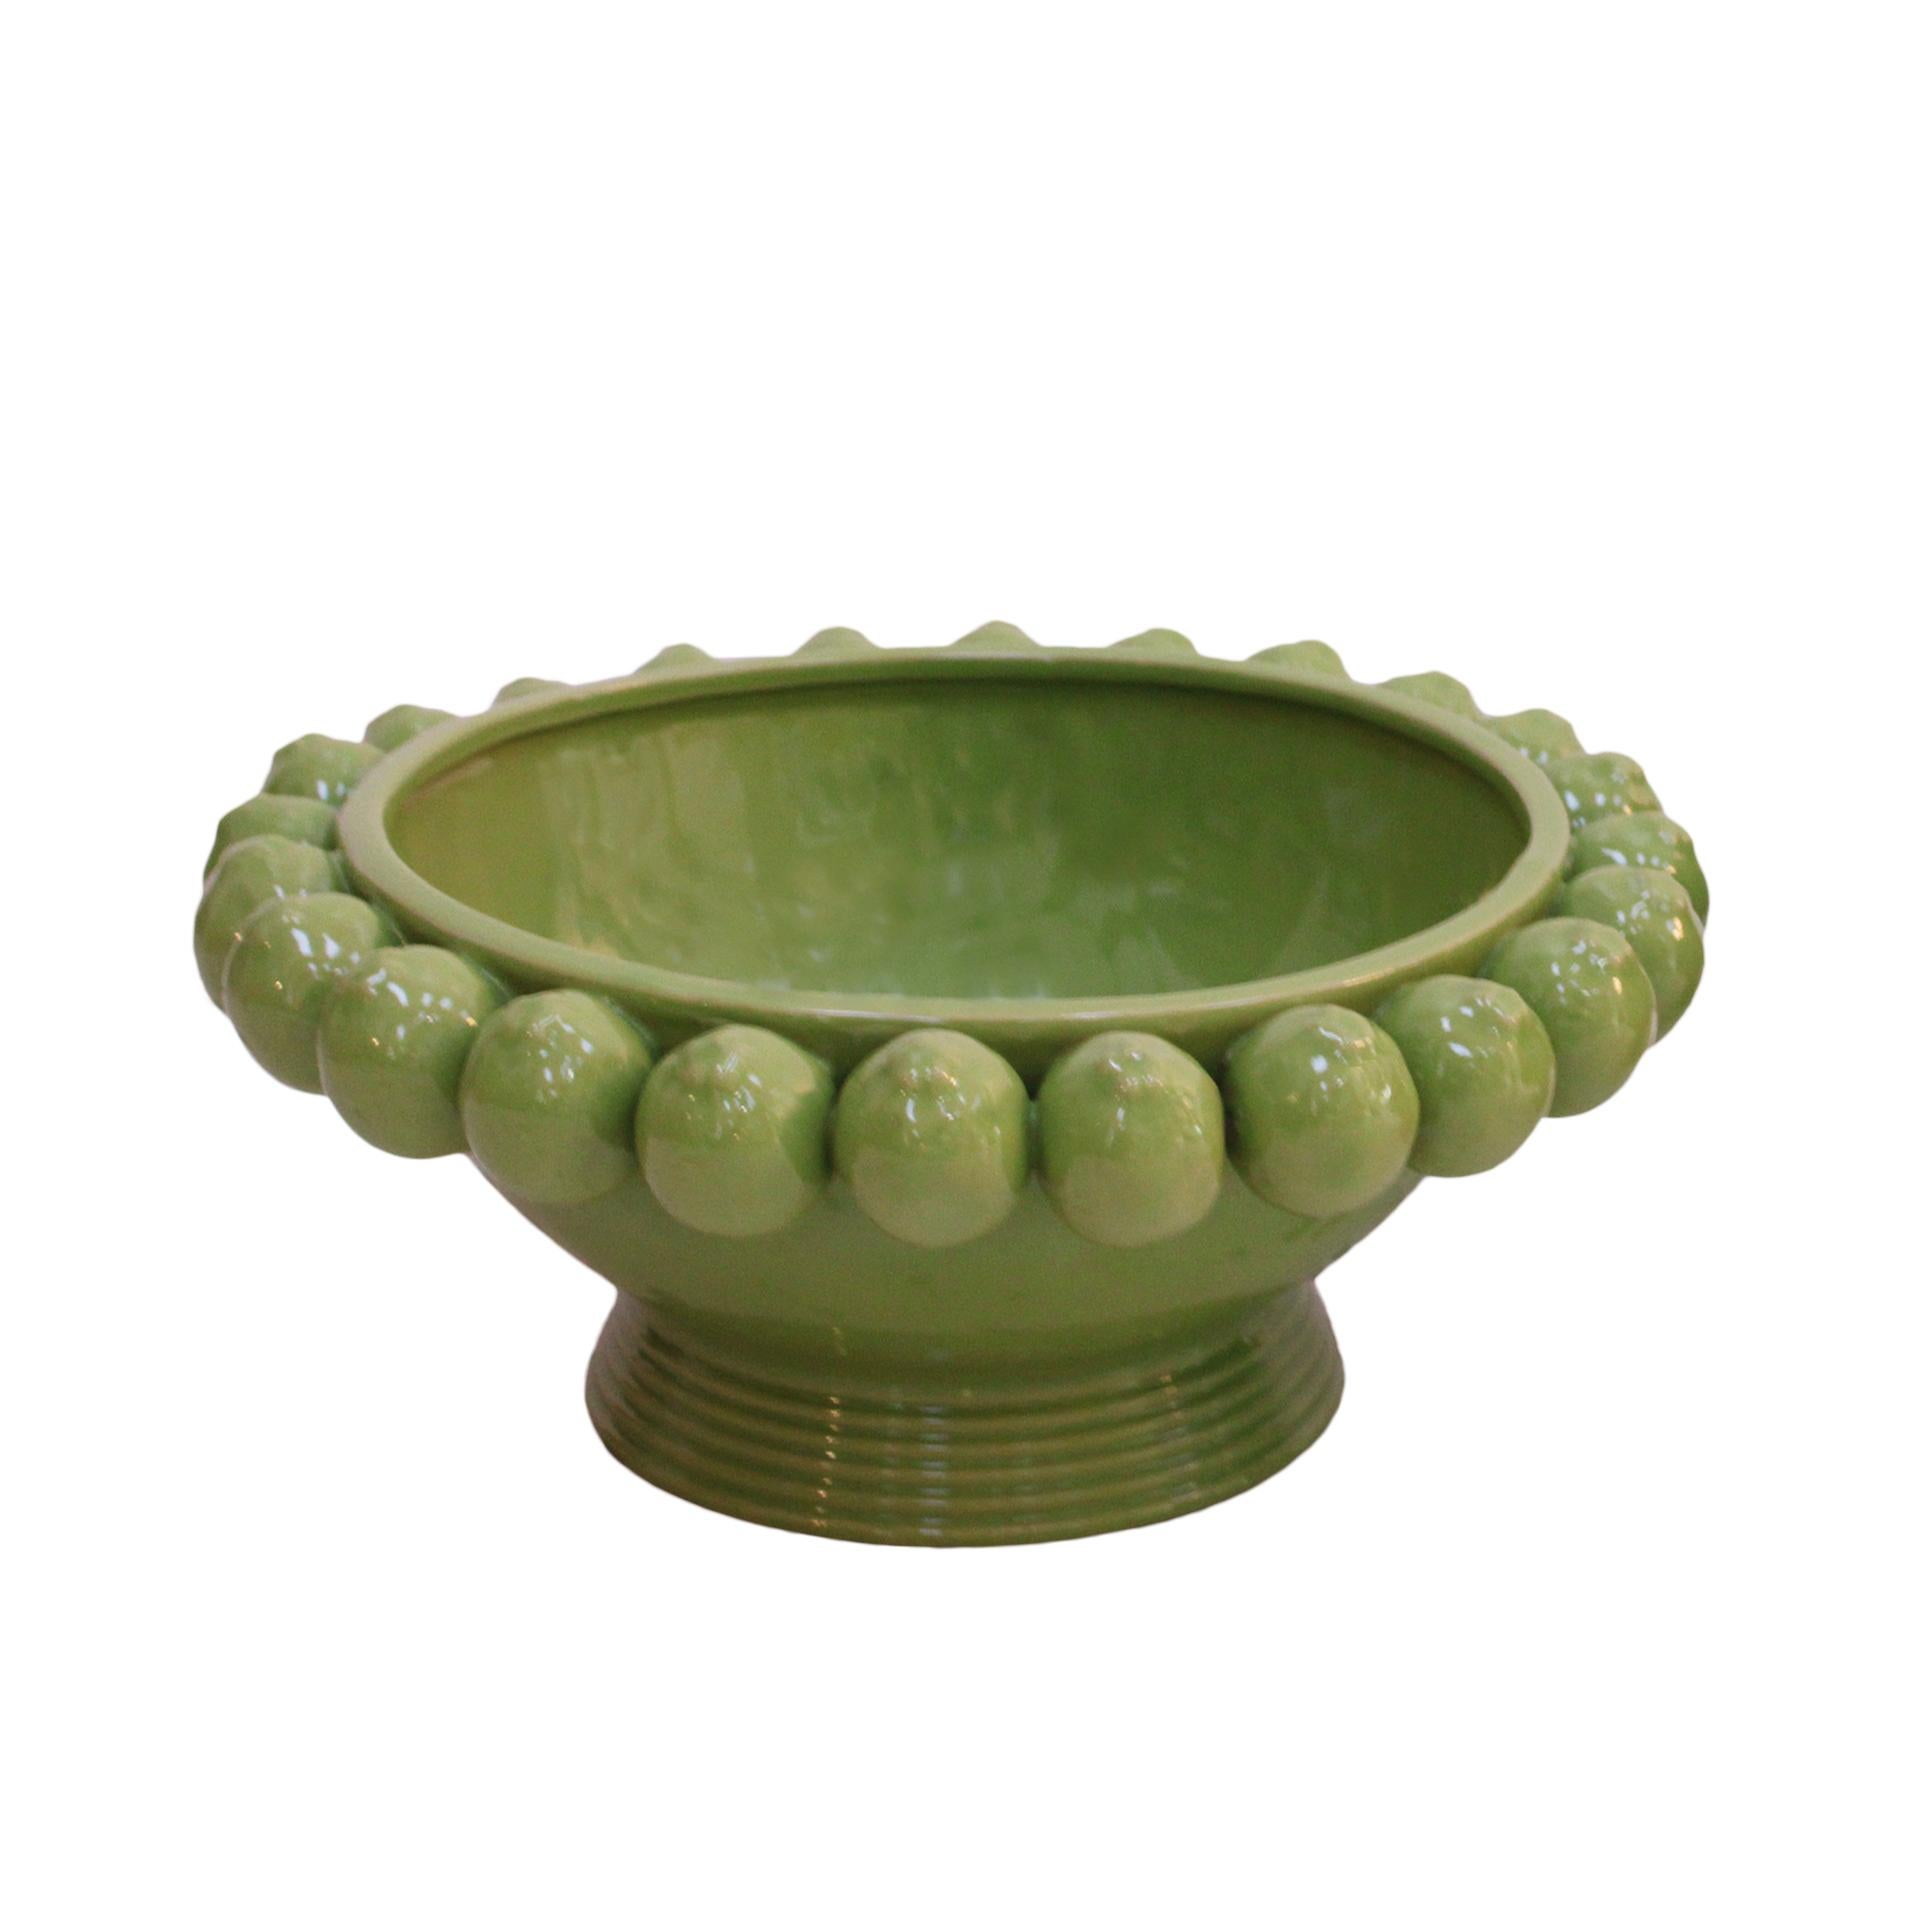 Vase fabriqué à la main en céramique émaillée avec des motifs traditionnels du sud de l'Italie.